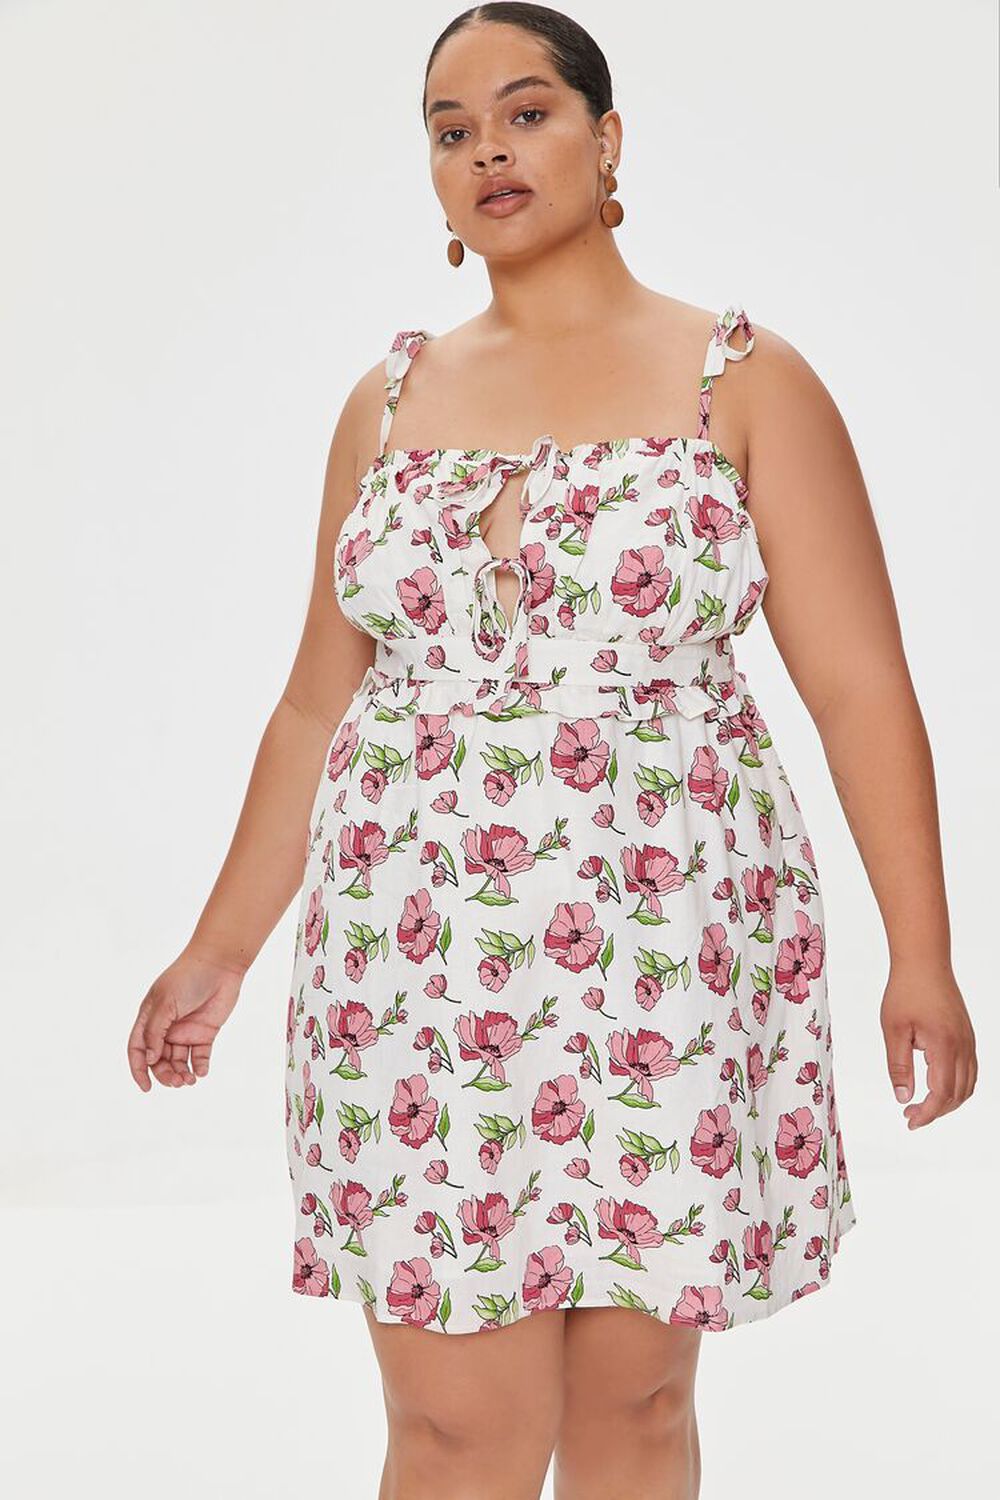 WHITE/MULTI Plus Size Floral Print Mini Dress, image 1